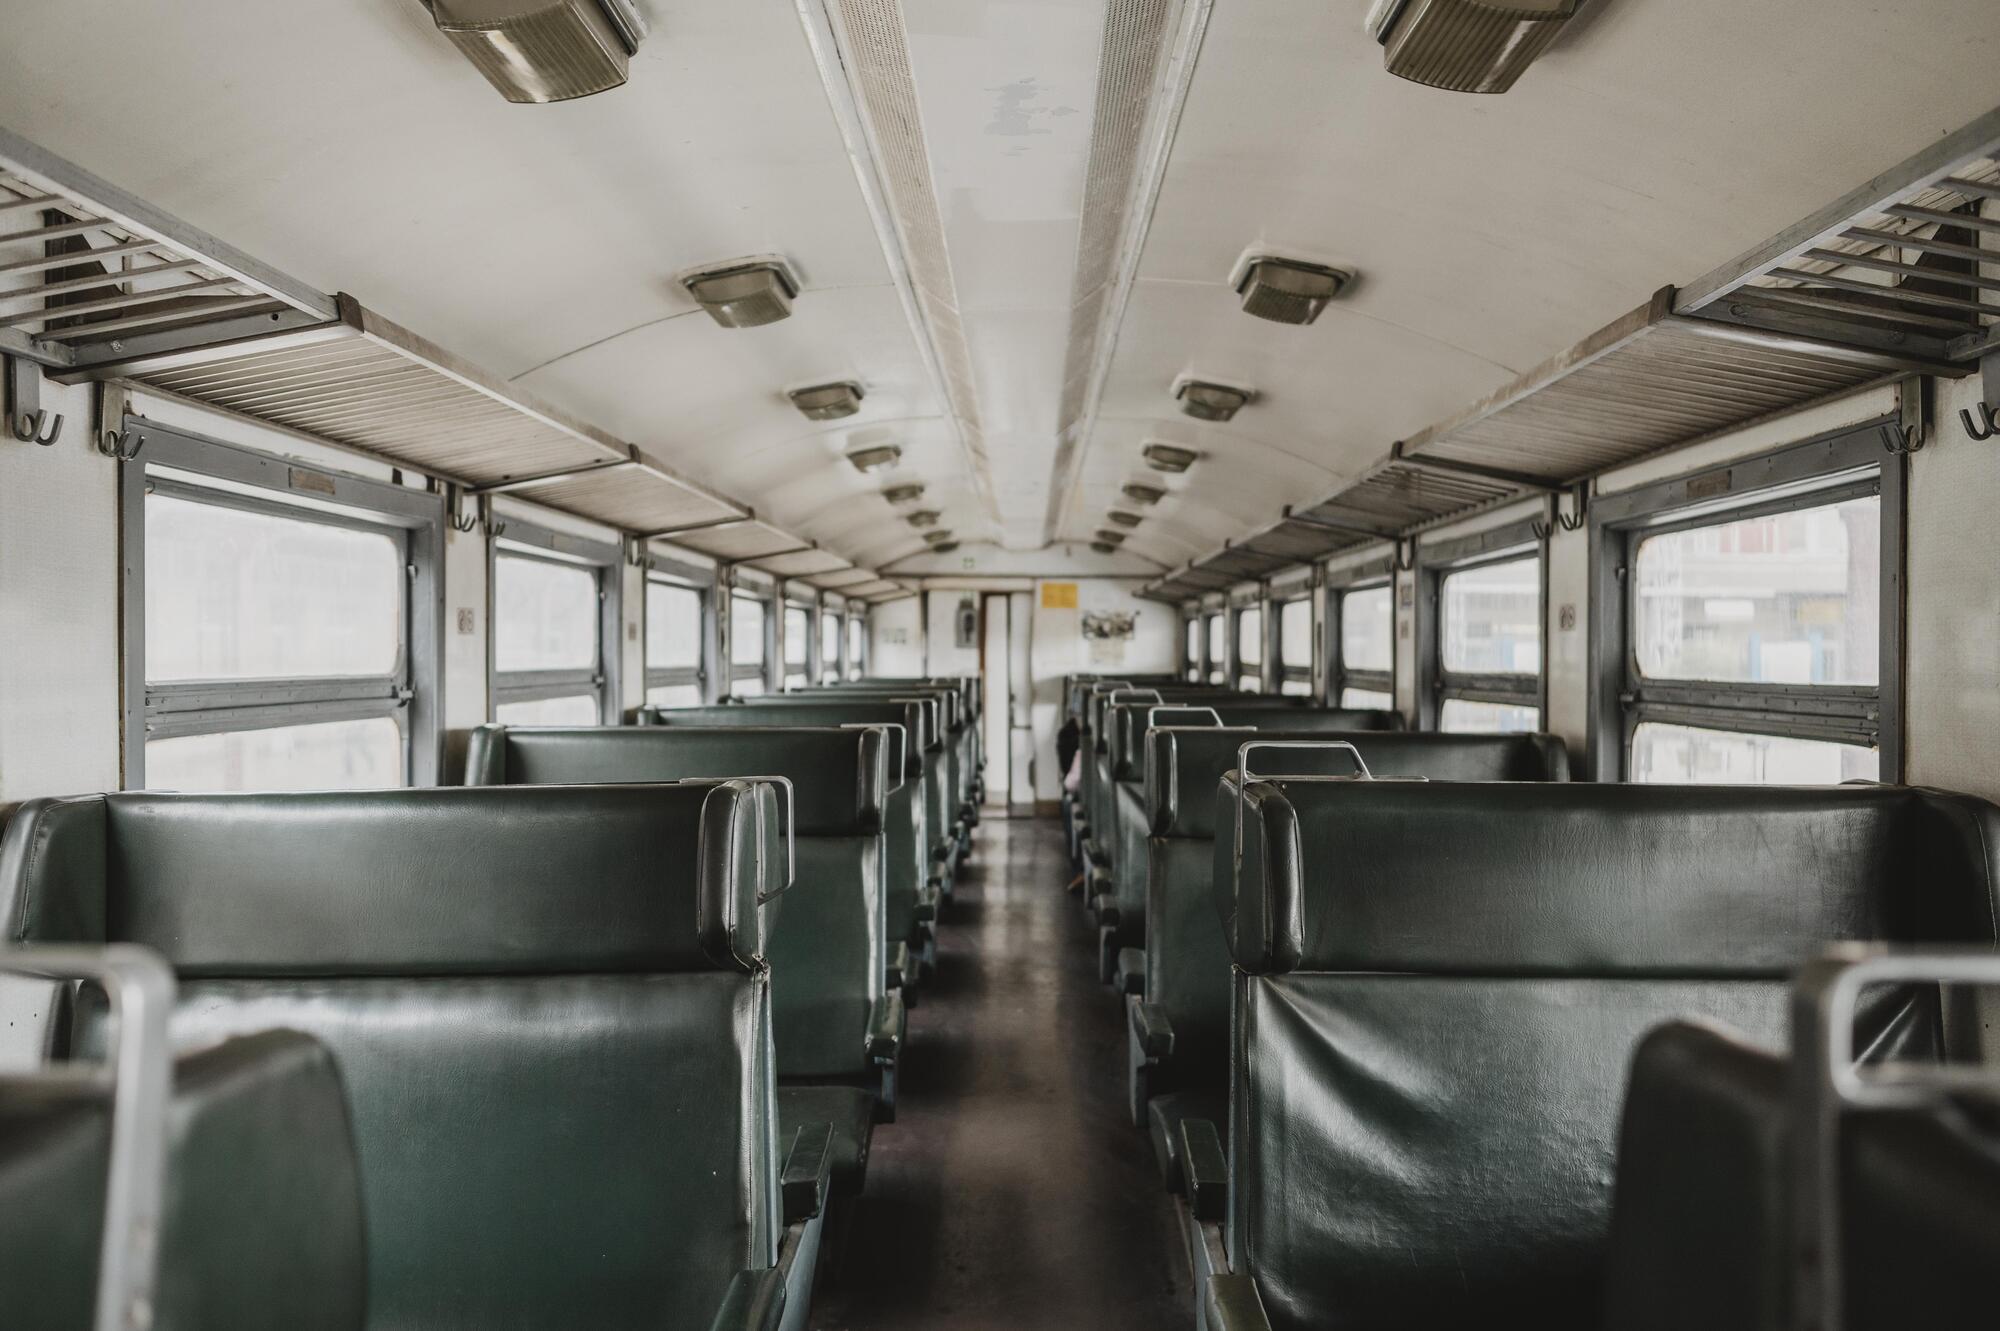 Под Черниговом детей перестали возить в школу: школьный автобус не останавливается, даже если есть свободные места. Что случилось